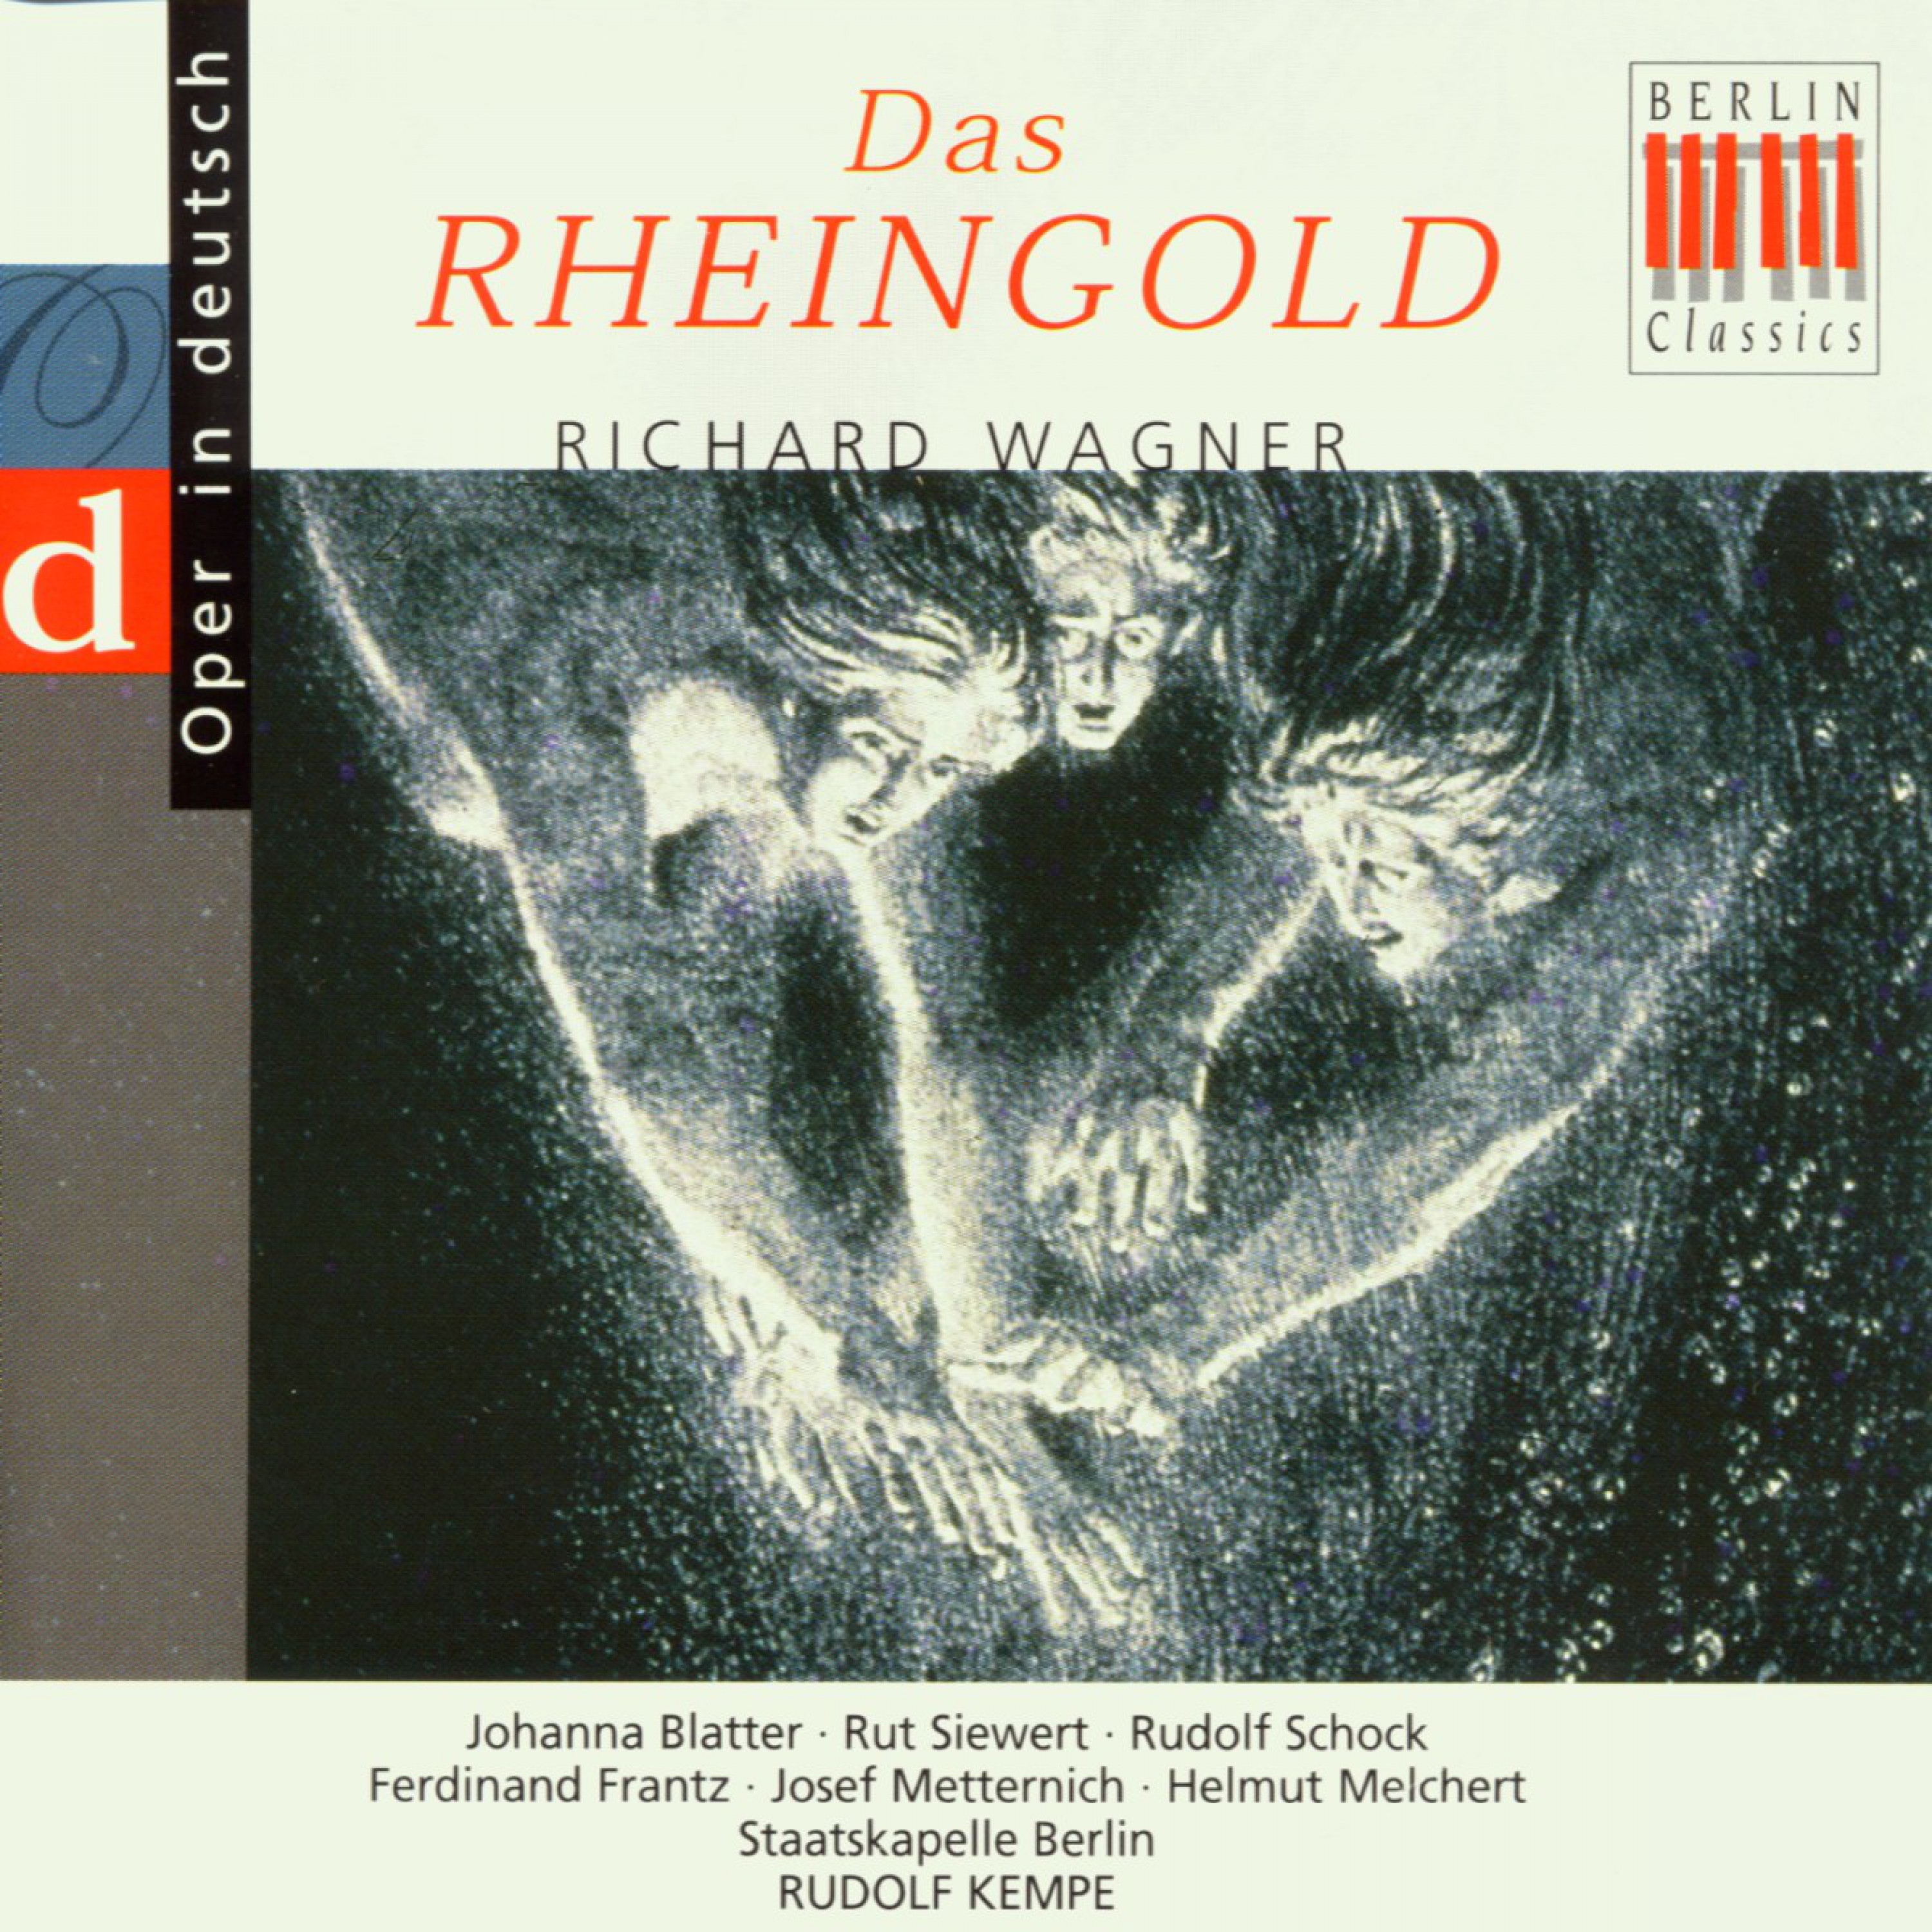 The Rhinegold: Act IV - "Weiche, Wotan, weiche! Flieh' des Ringes Fluch!"